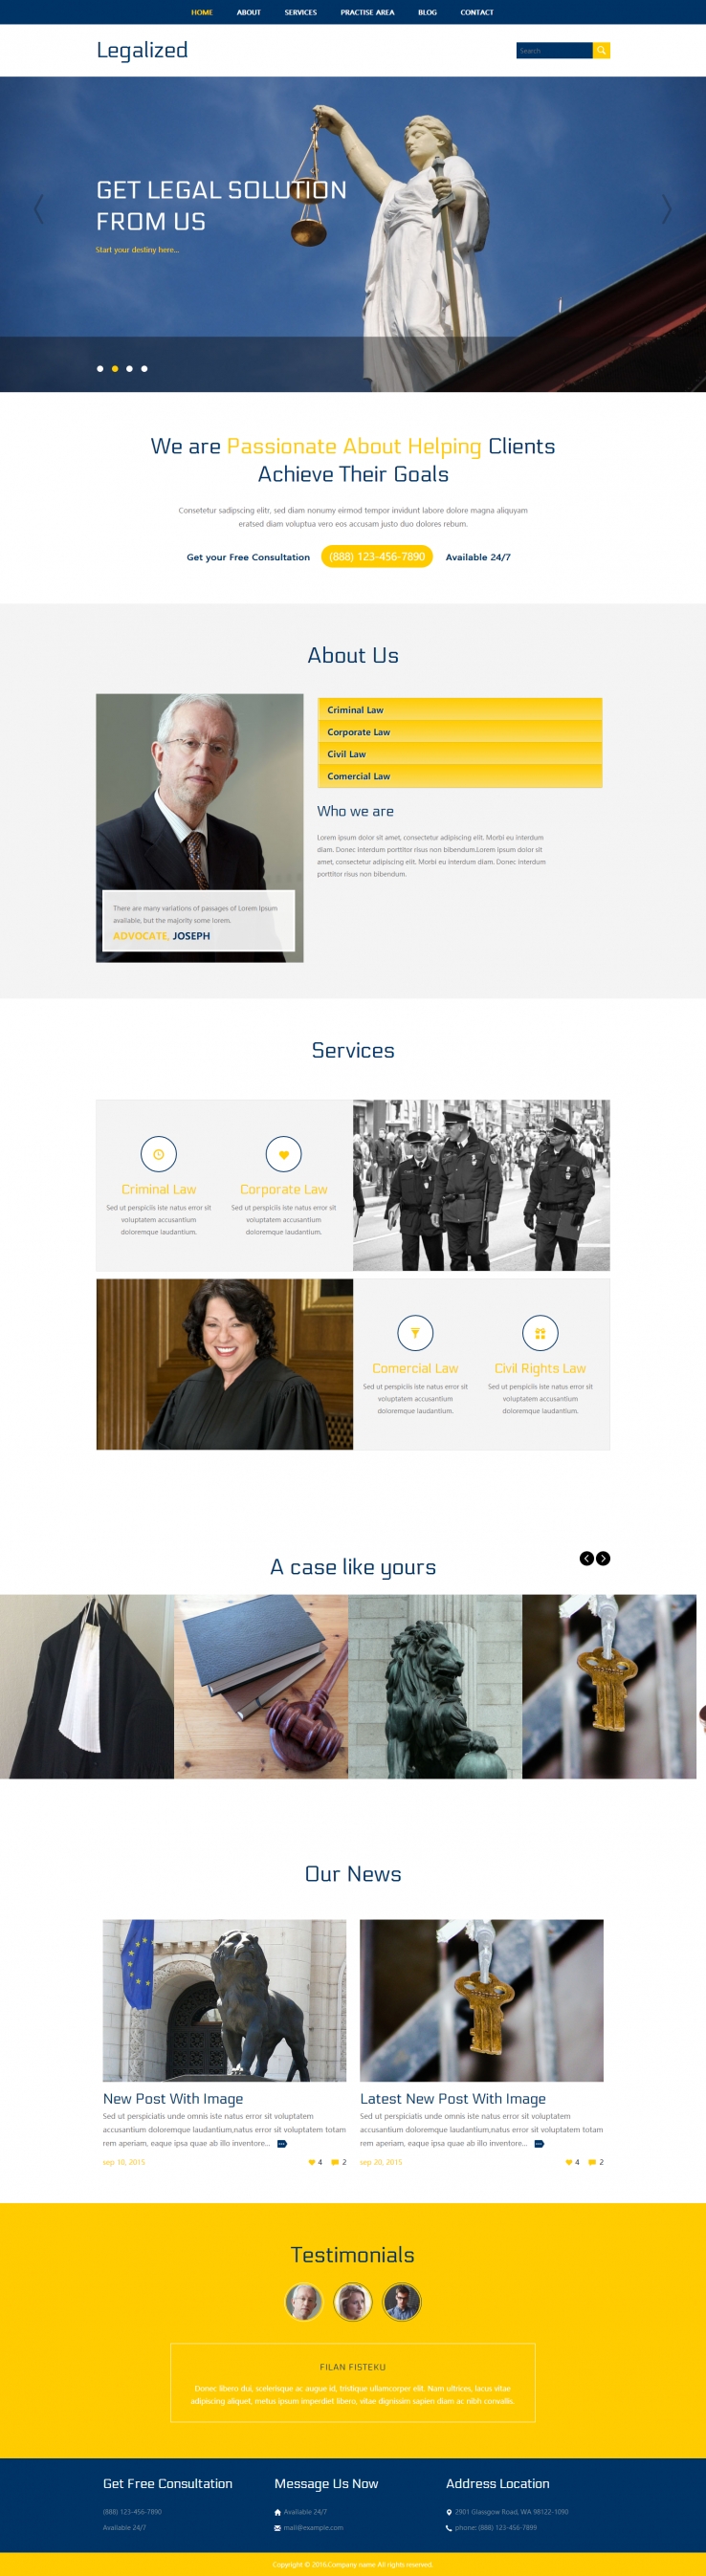 蓝色宽屏风格的法律律师网站模板下载